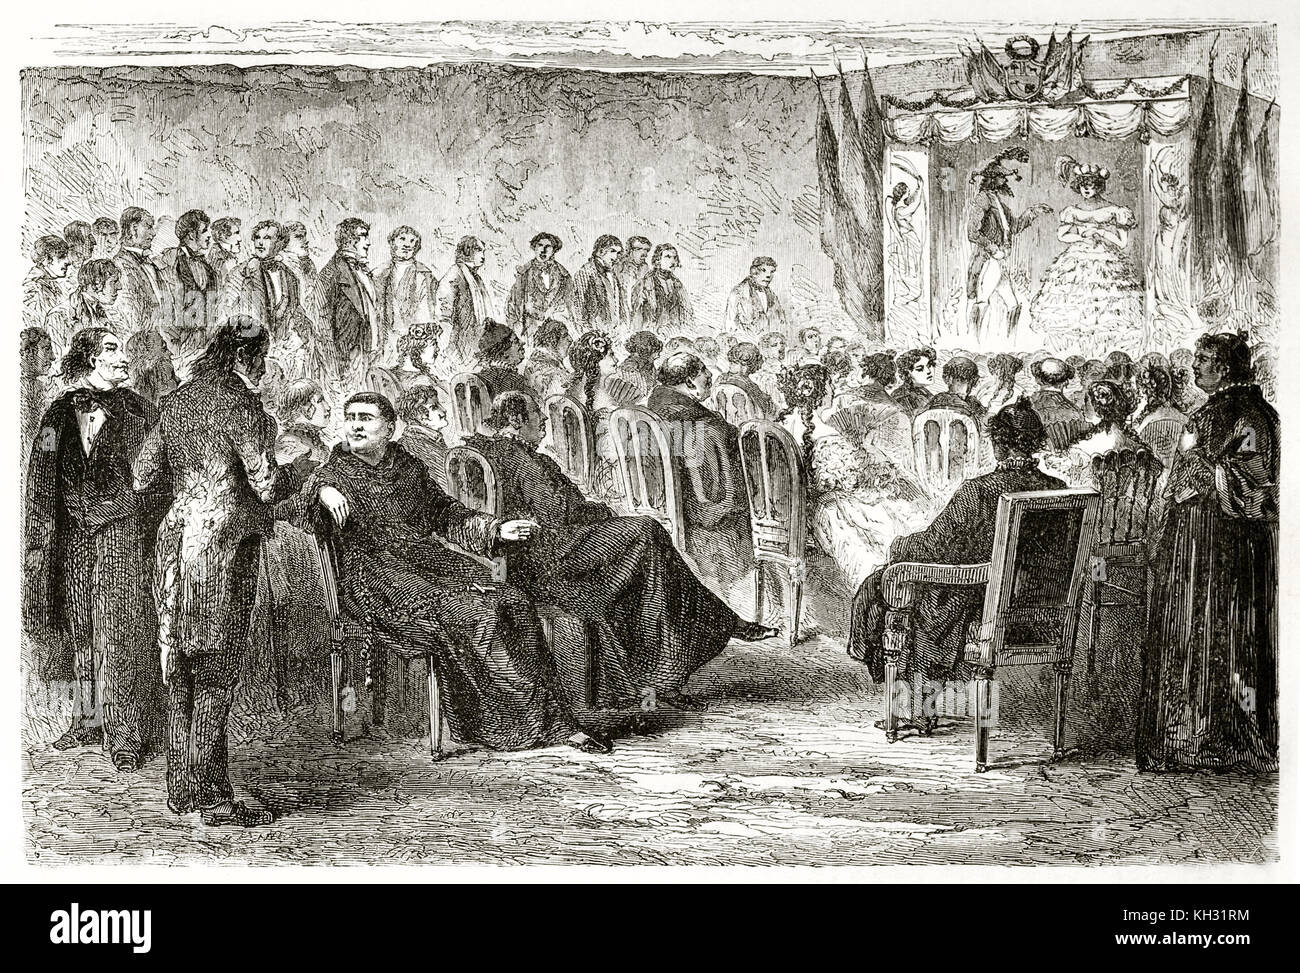 Alte Illustration einer theatralischen Darstellung in San Bernardo College, Cuzco, Peru. Von Riou, Publ. Bei le Tour du Monde, Paris, 1863 Stockfoto